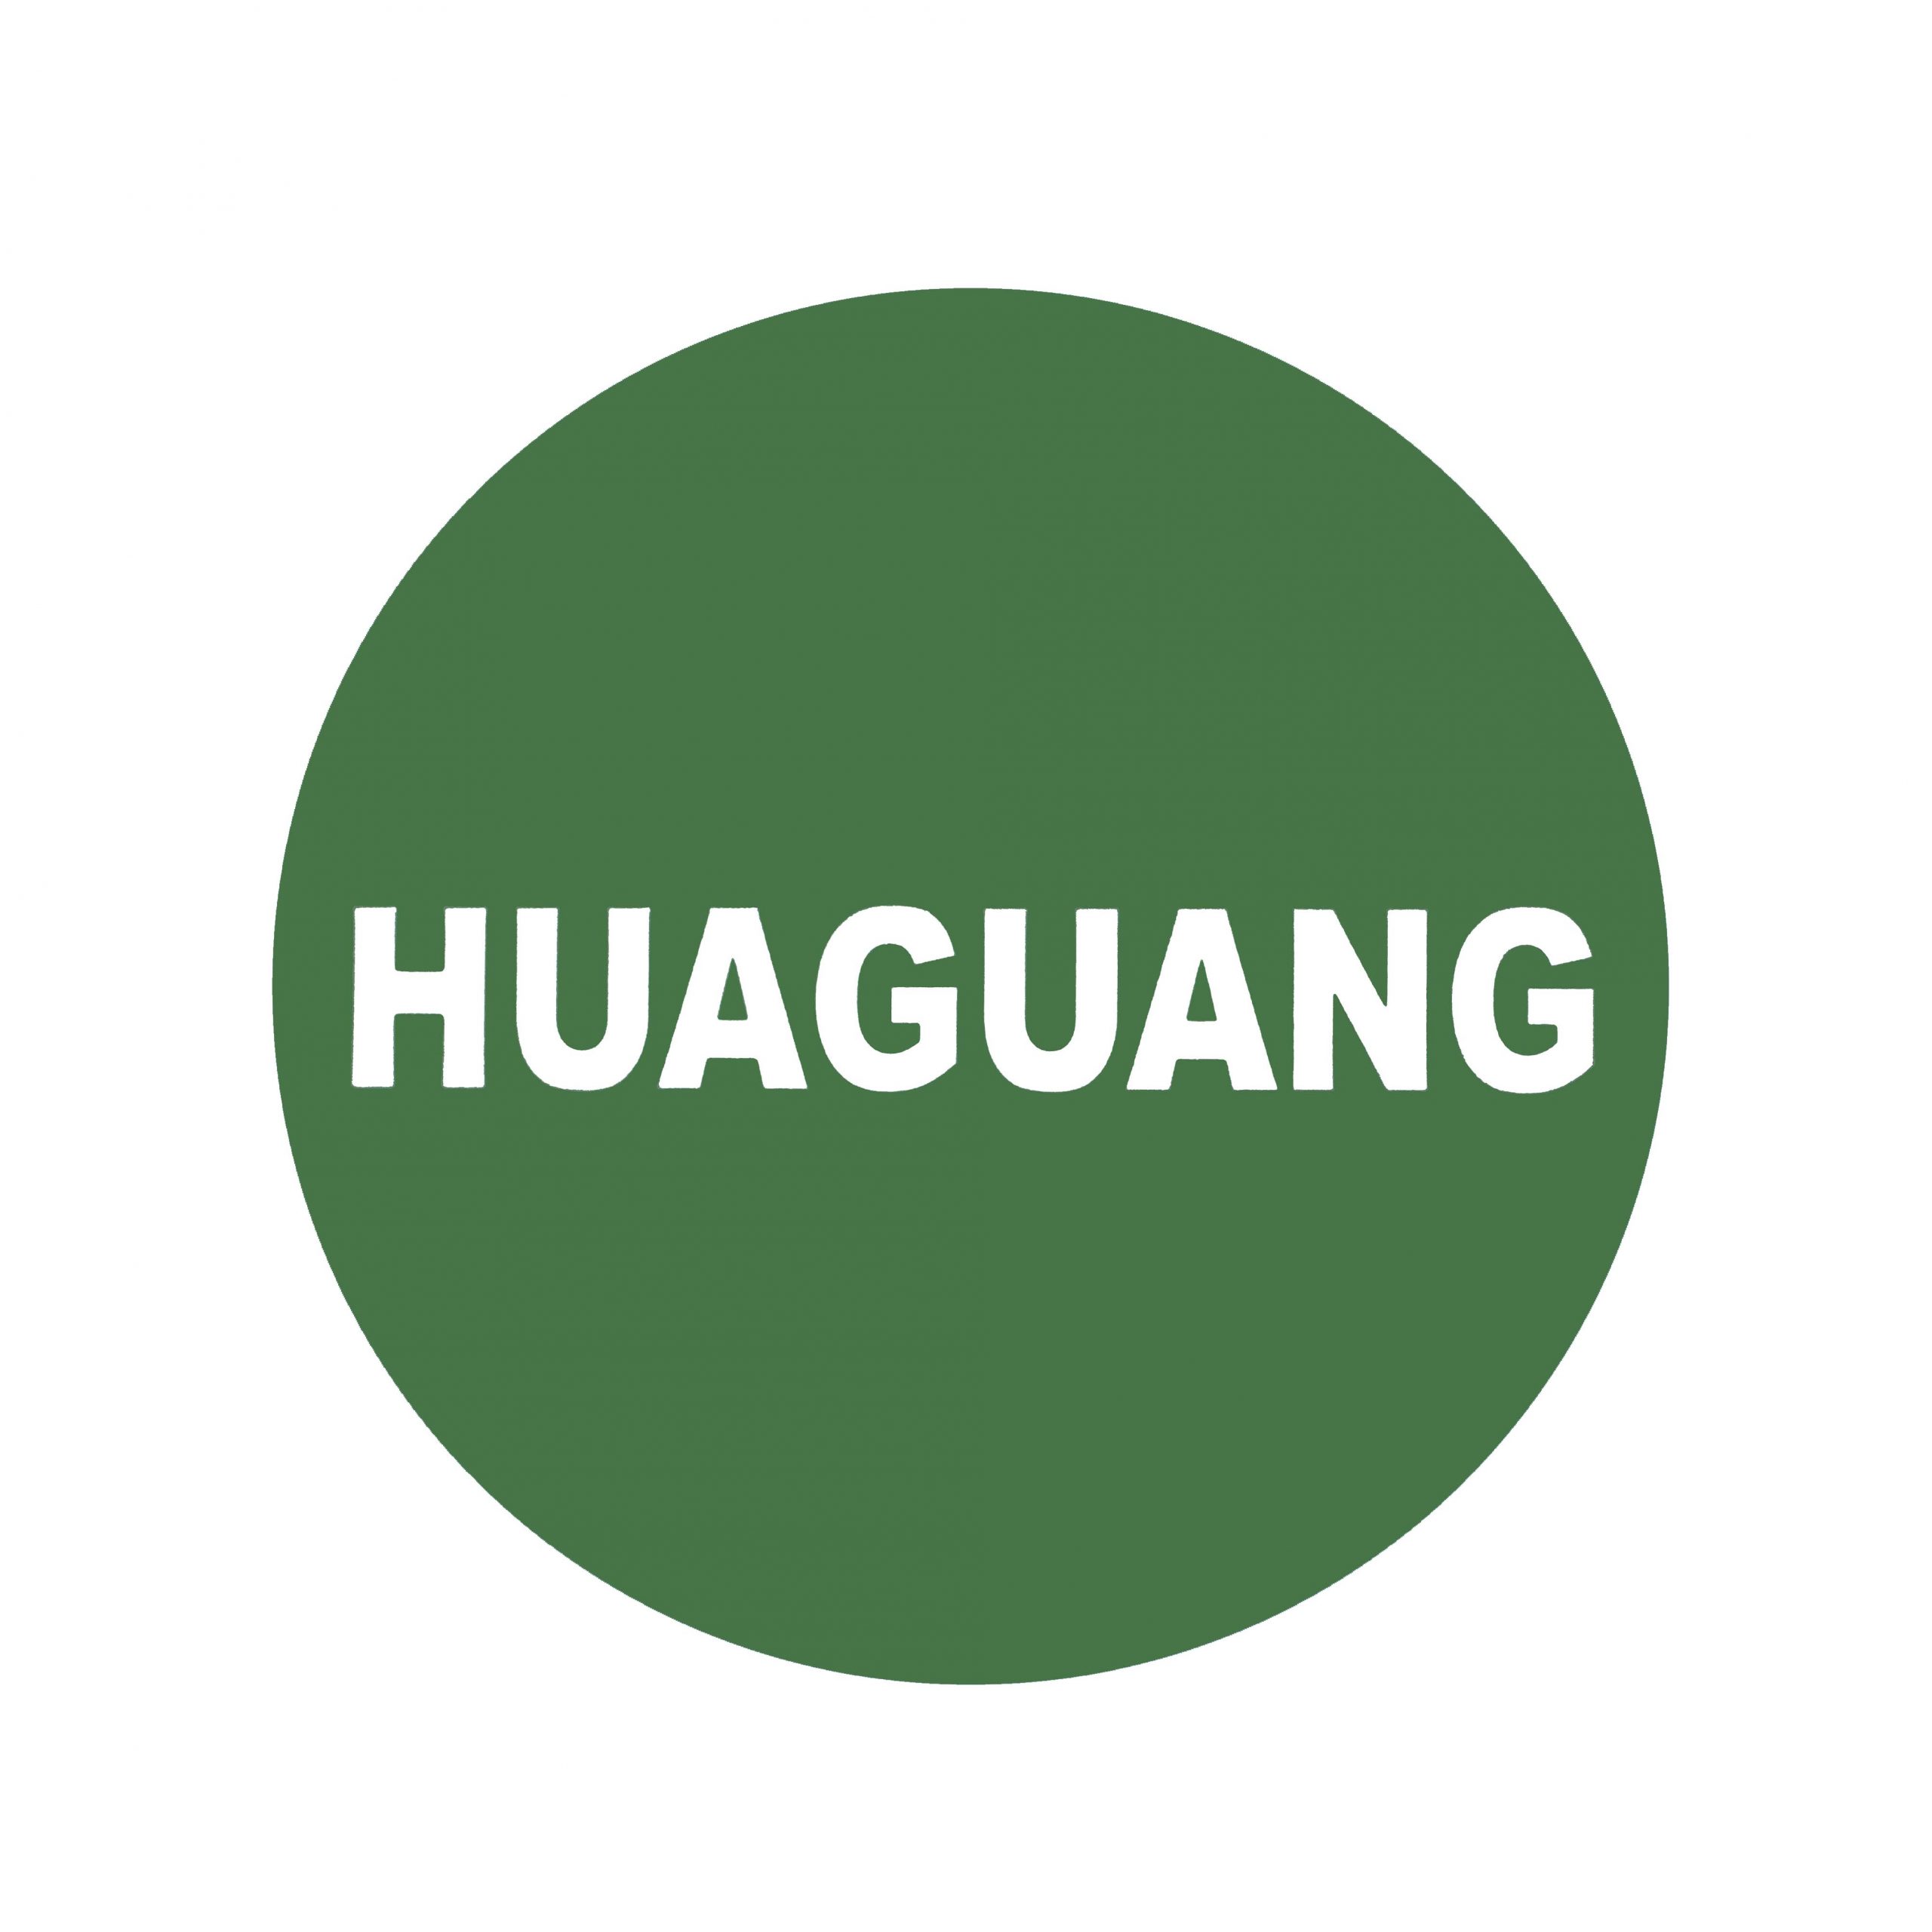 هاگوانگ Huaguang